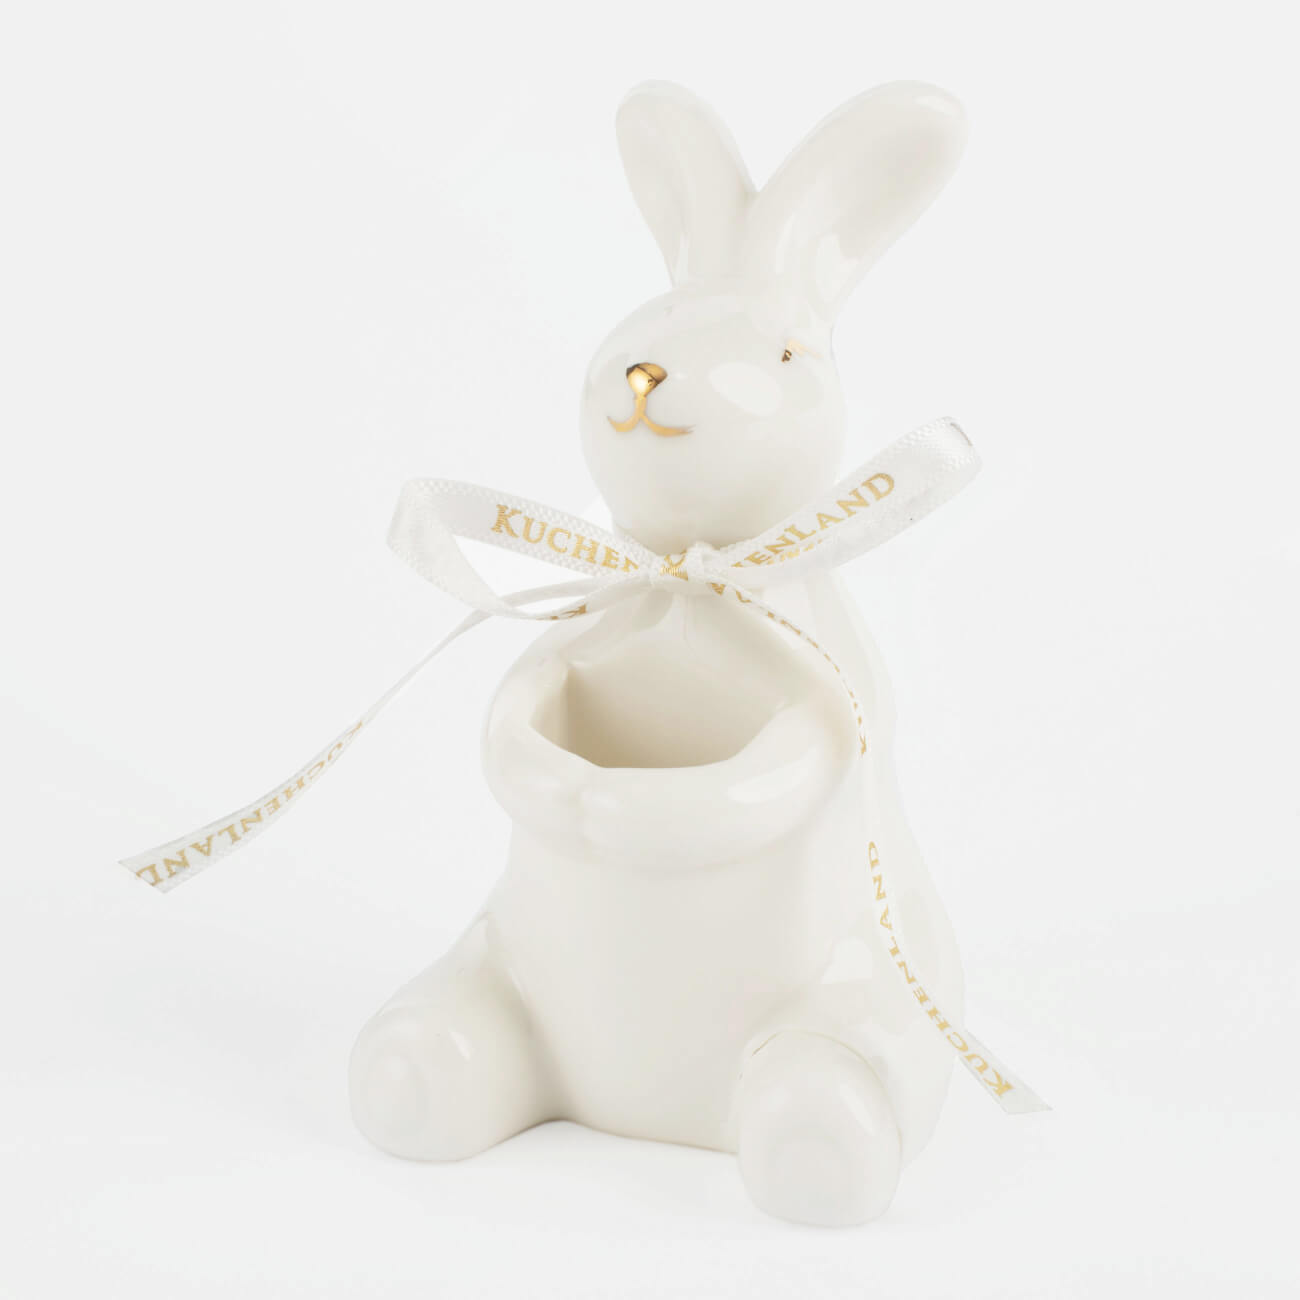 Подставка для зубочисток, 10 см, фарфор P, бело-золотистая, Кролик, Easter gold подставка для зубочисток